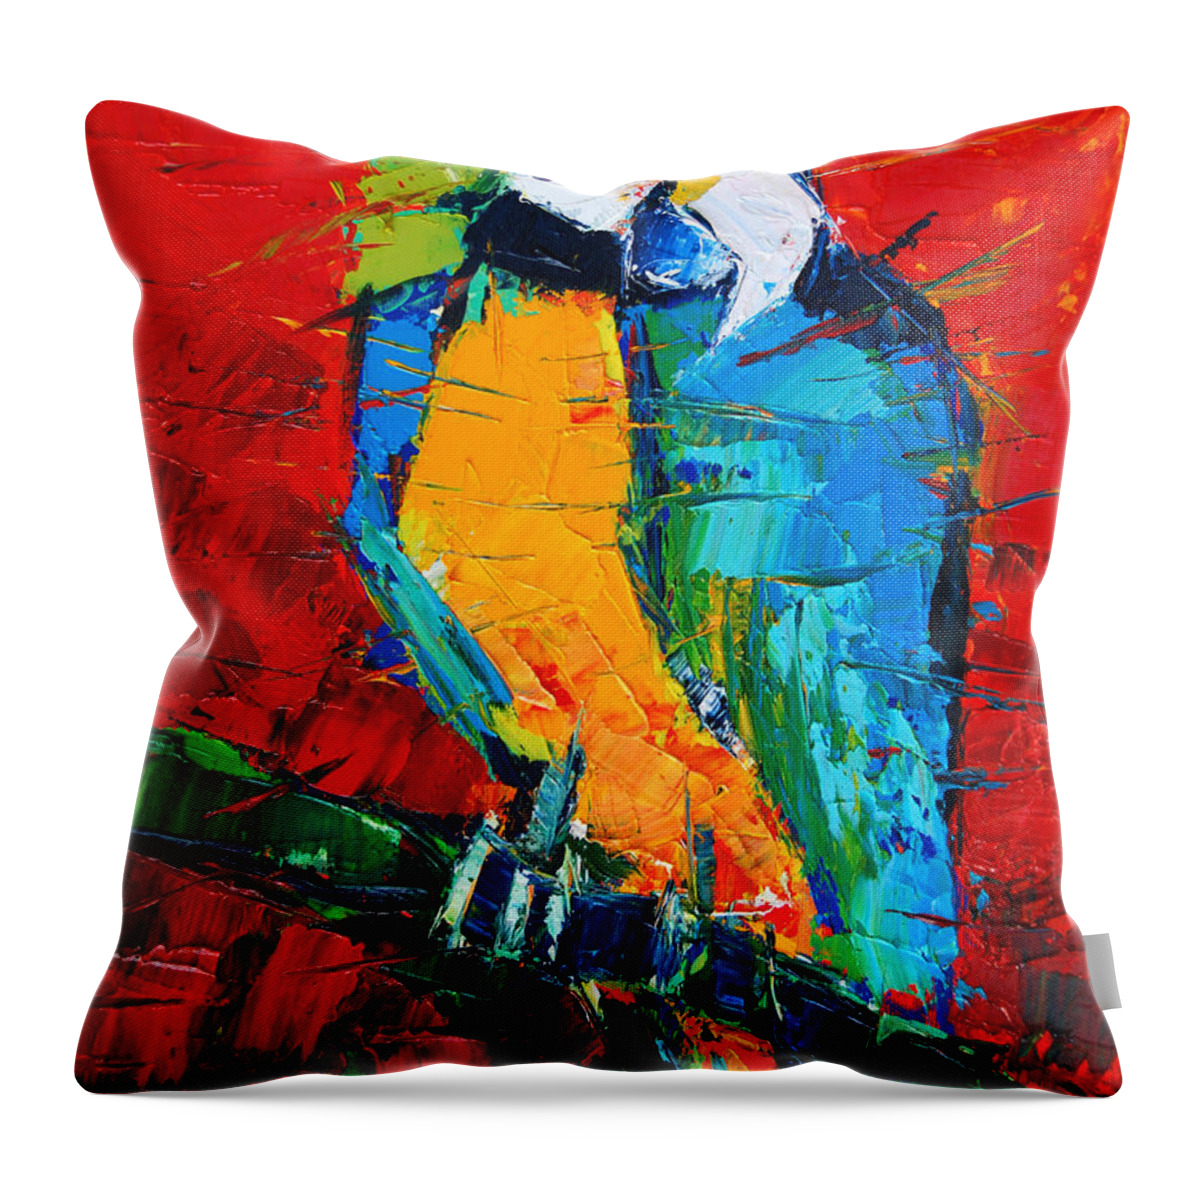 Coco The Talkative Parrot Throw Pillow featuring the painting Coco The Talkative Parrot by Mona Edulesco